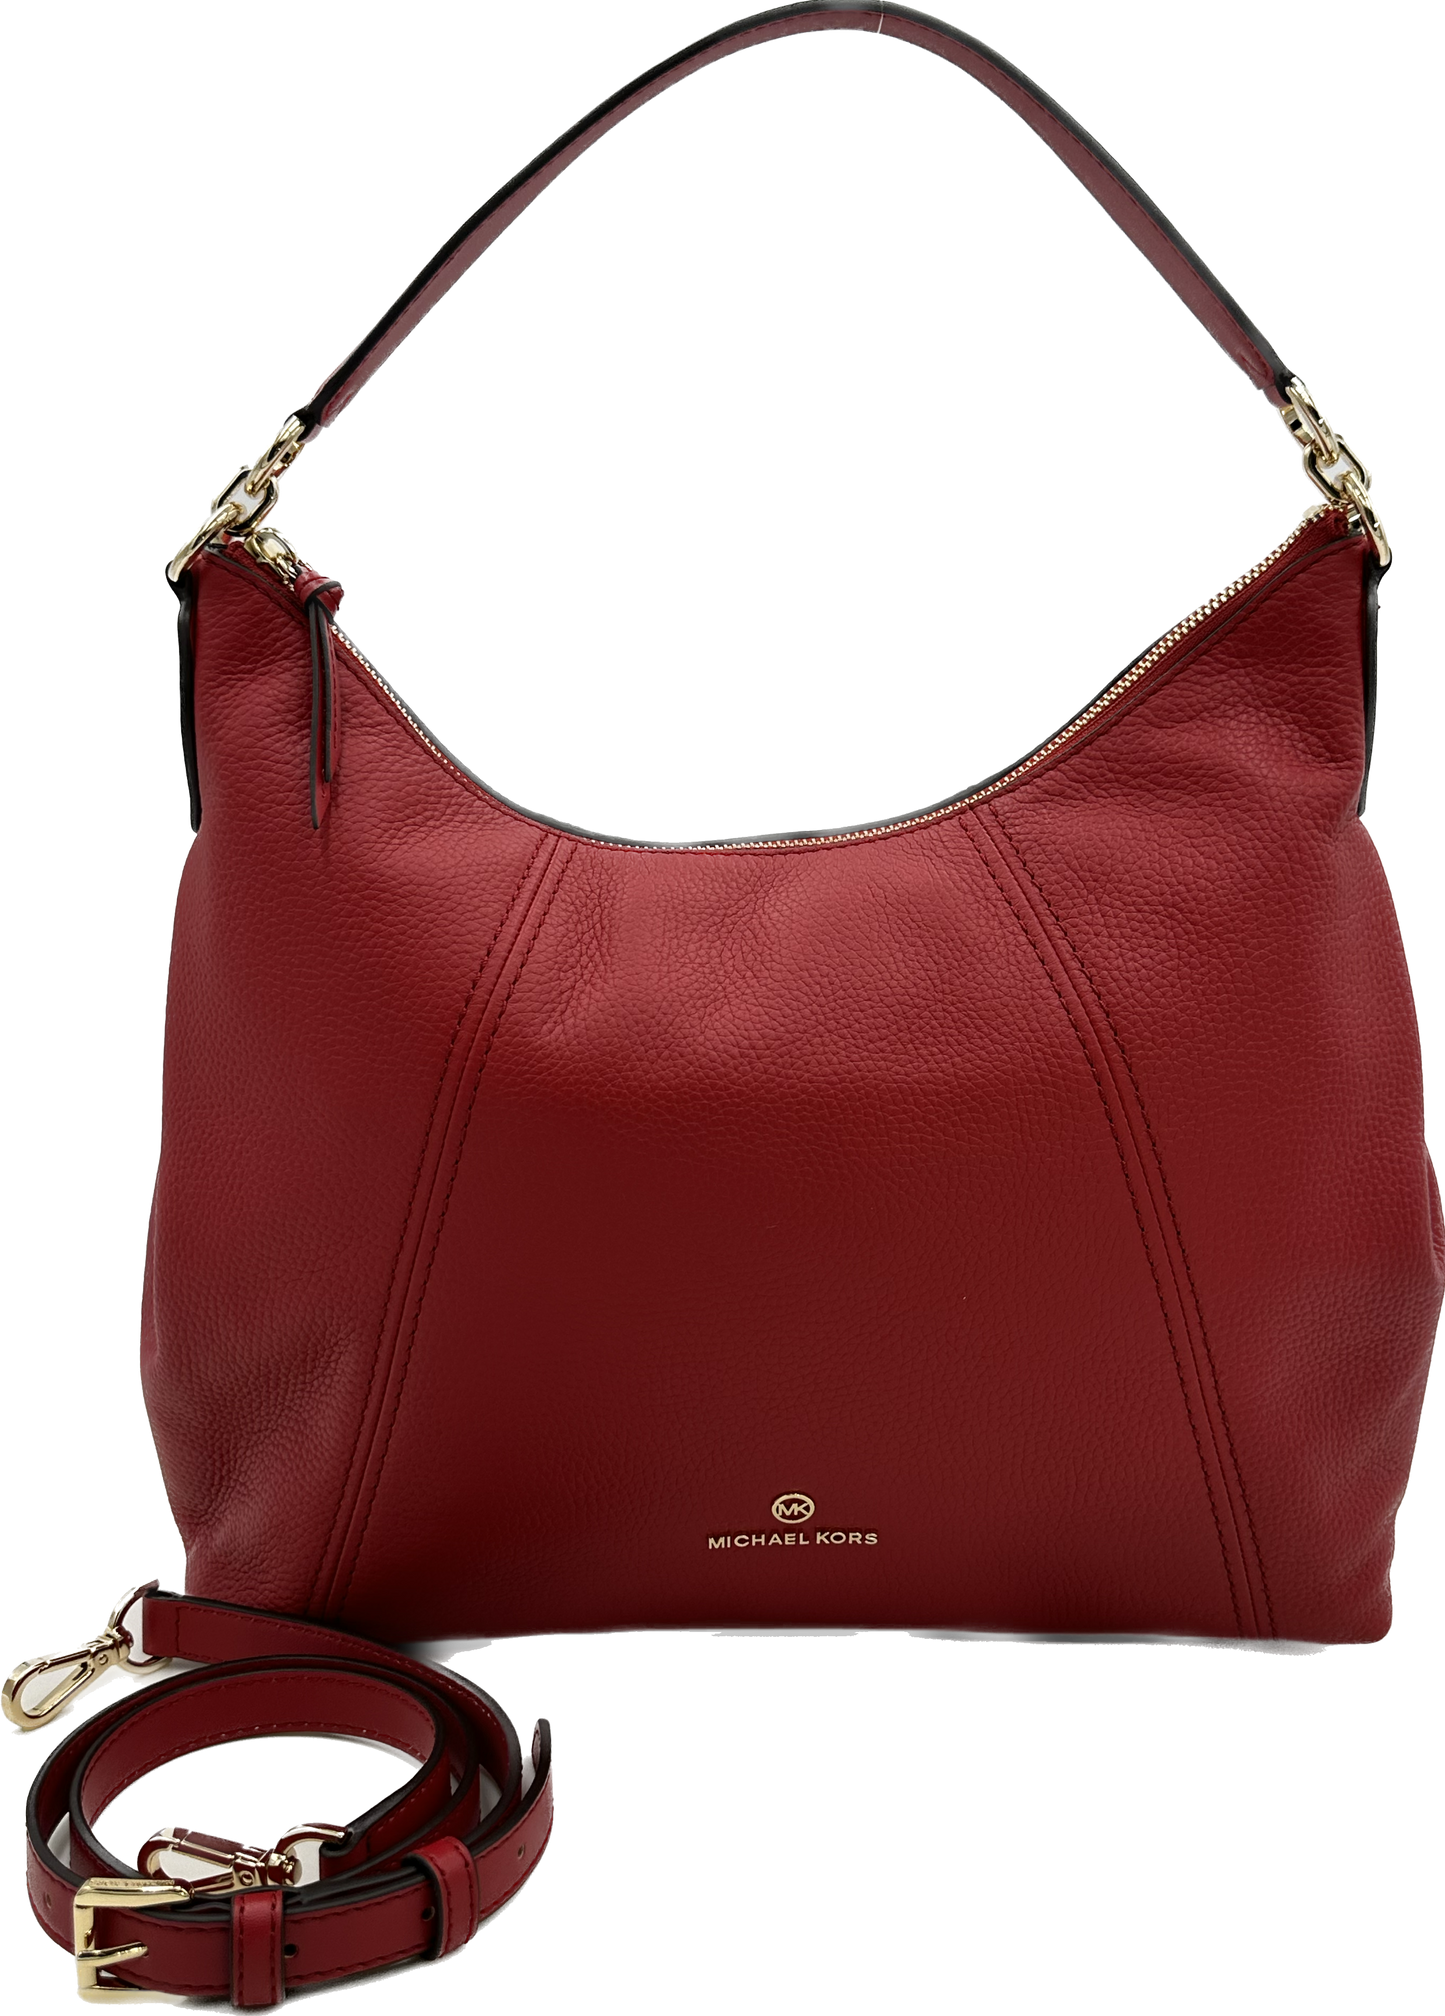 Michael Kors Women's Sienna Crimson Large Pebbled Leather Shoulder Bag